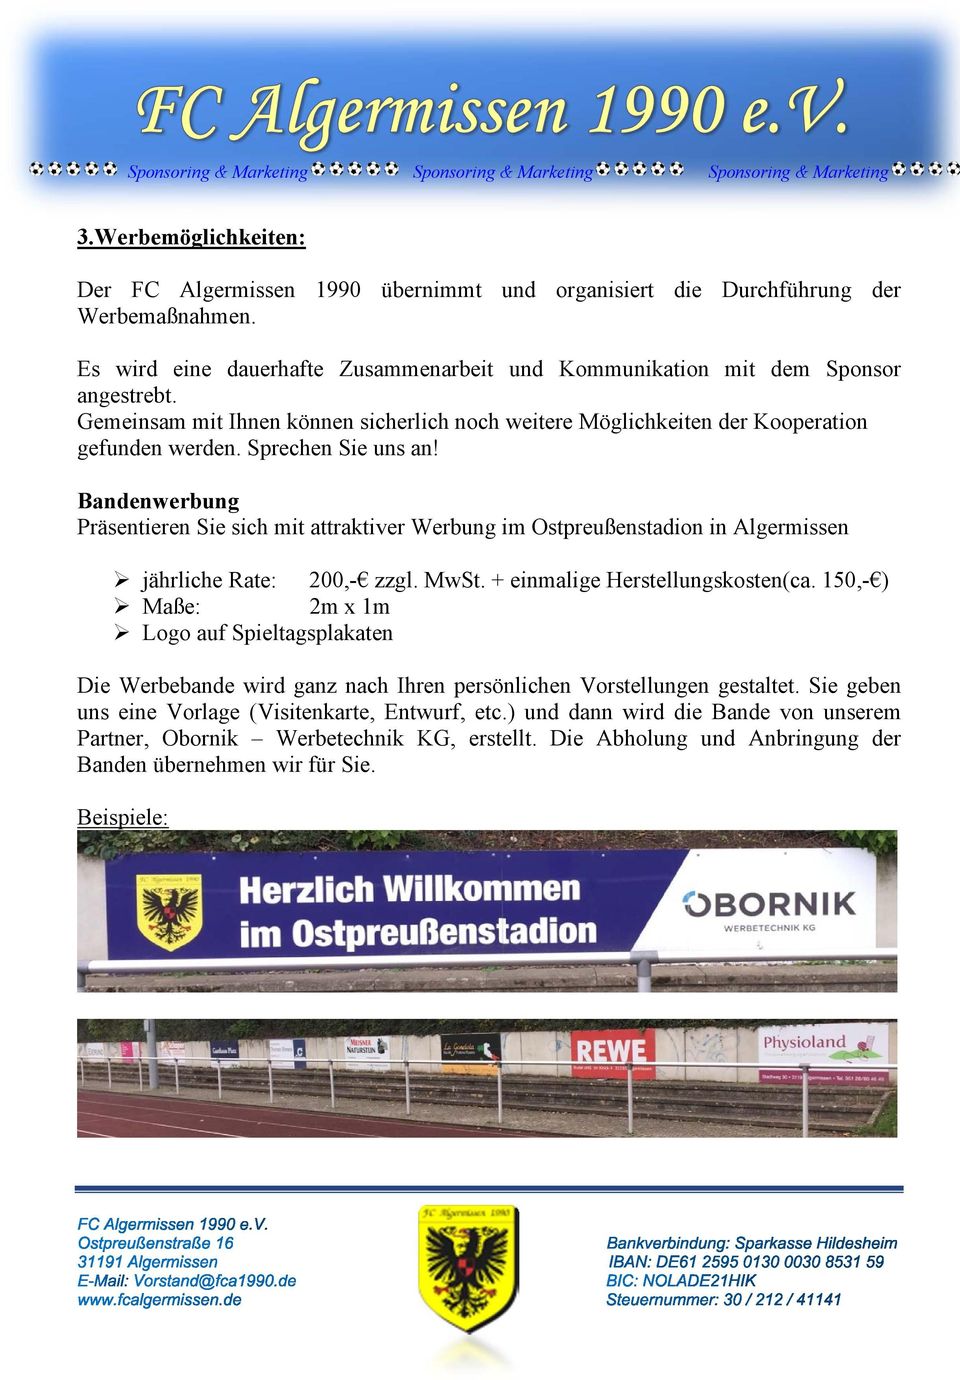 Bandenwerbung Präsentieren Sie sich mit attraktiver Werbung im Ostpreußenstadion in Algermissen jährliche Rate: 200,- zzgl. MwSt. + einmalige Herstellungskosten(ca.